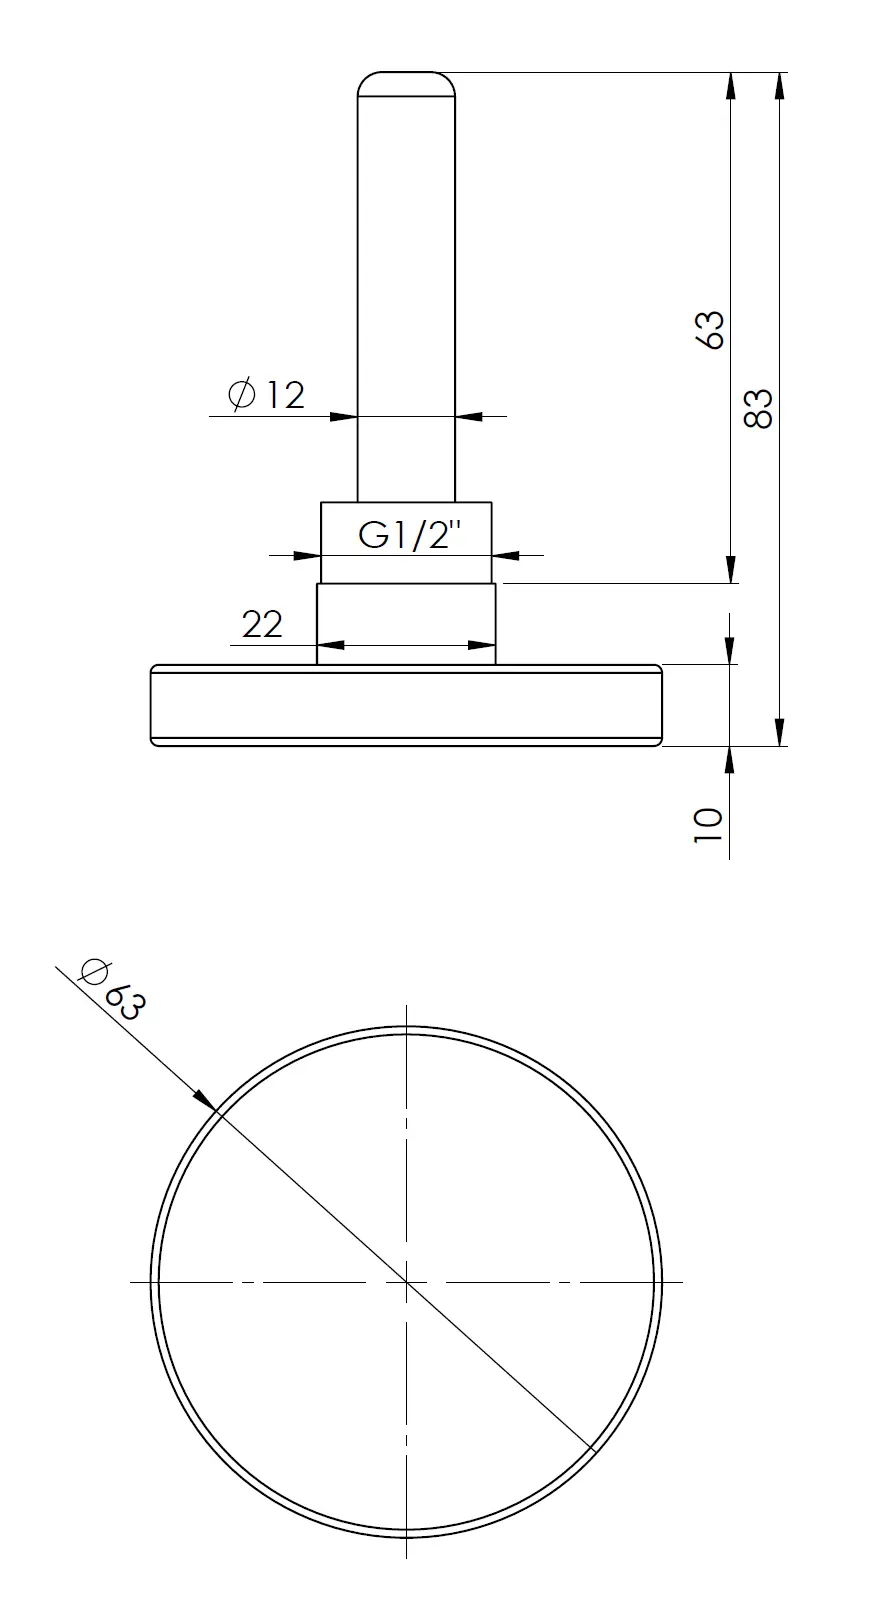 Termometr bimetaliczny BiTh 63, fi63 mm, -20÷60°C, L 63 mm, G1/2", ax, kl. 2 - budowa